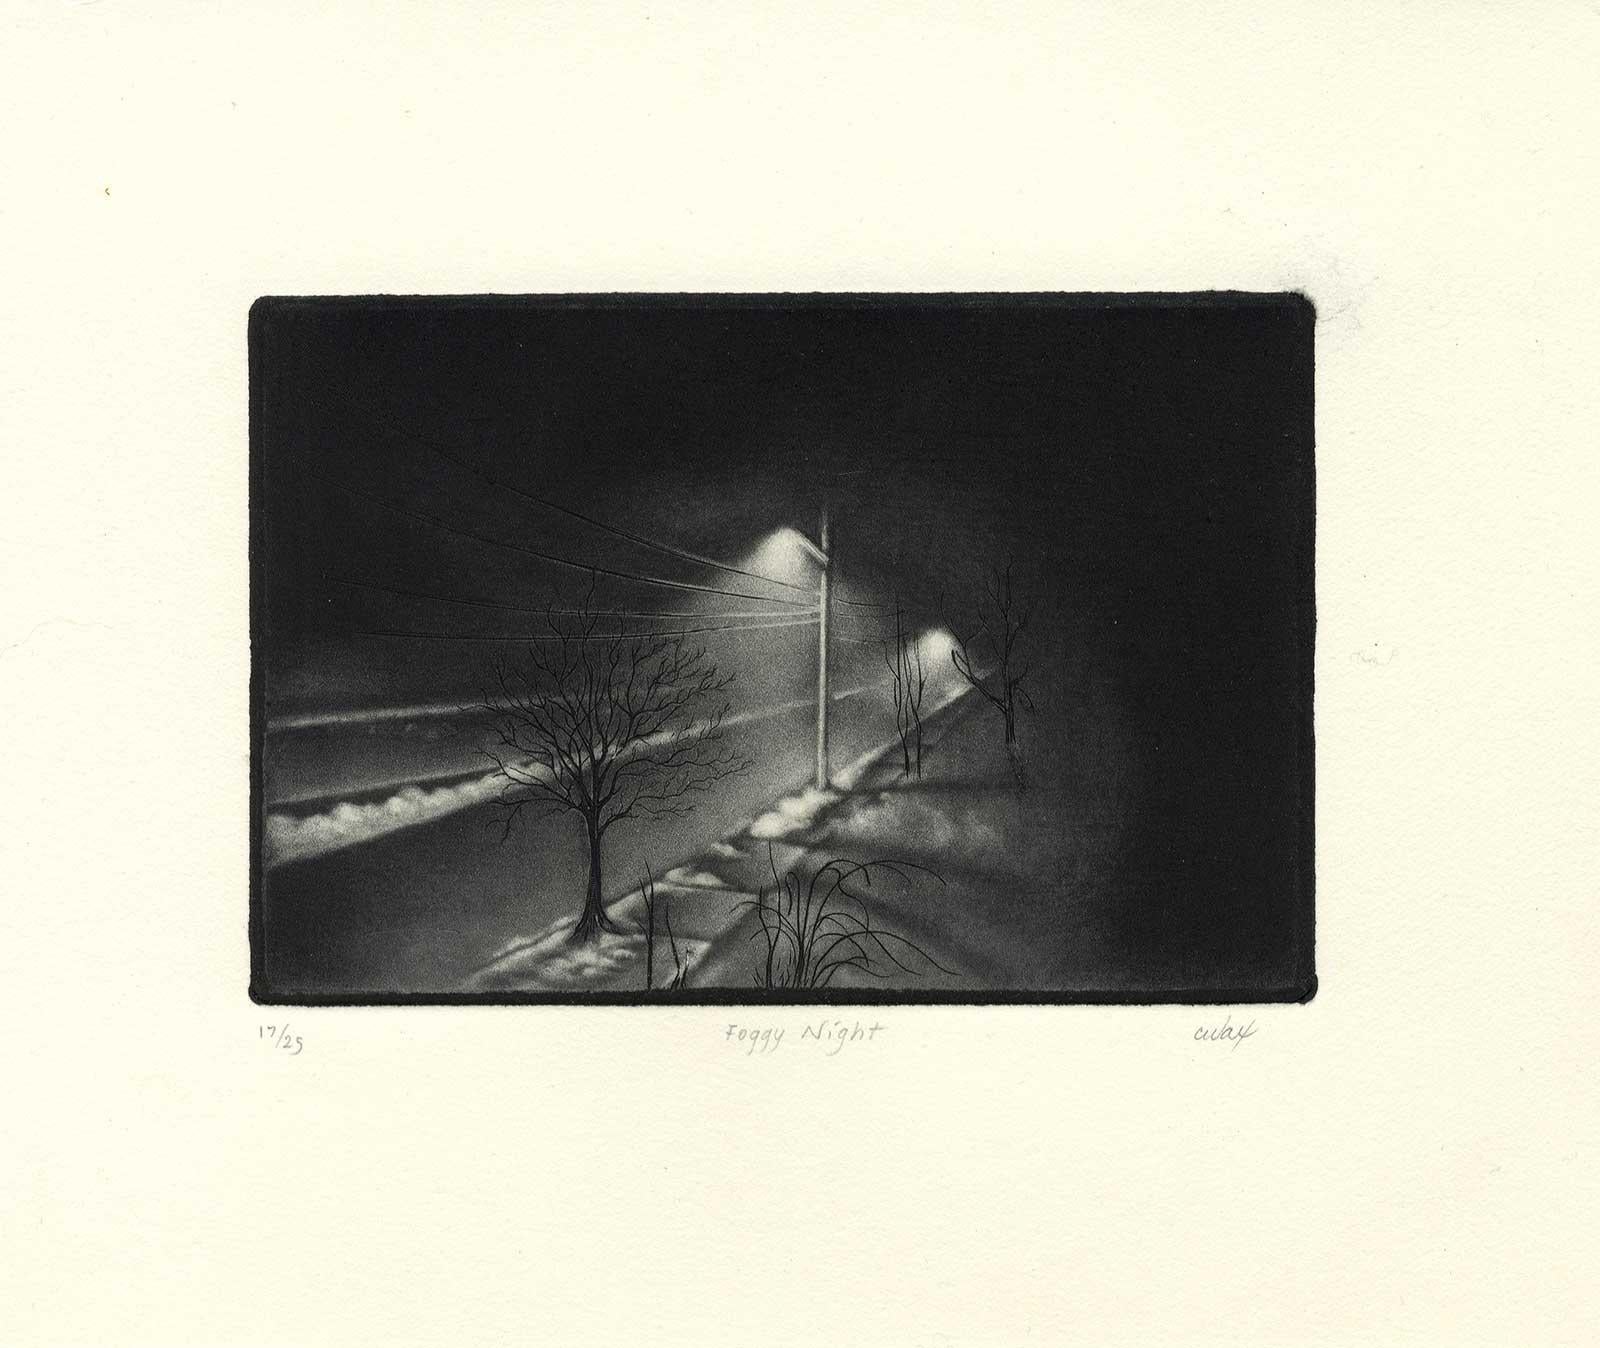 Foggy Night - Black Print by Carol Wax